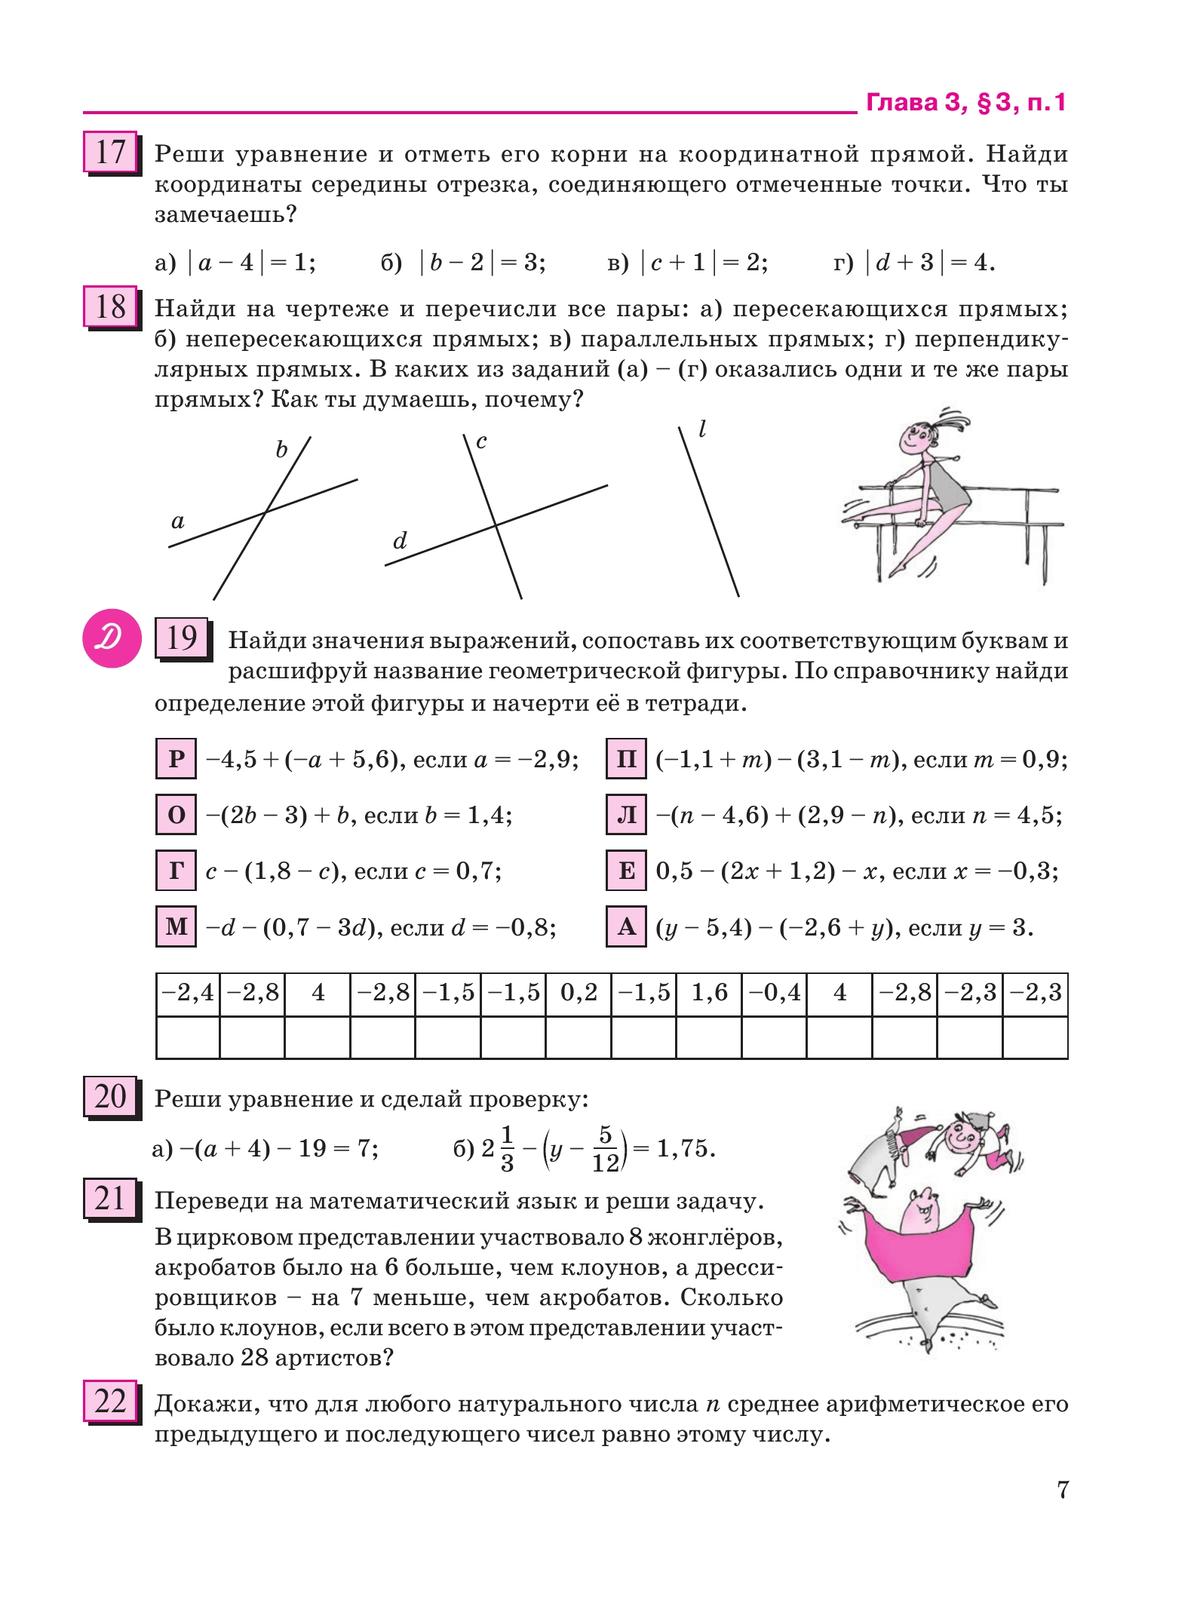 Математика. 6 класс. Учебное пособие. В 3 ч. Часть 3 3